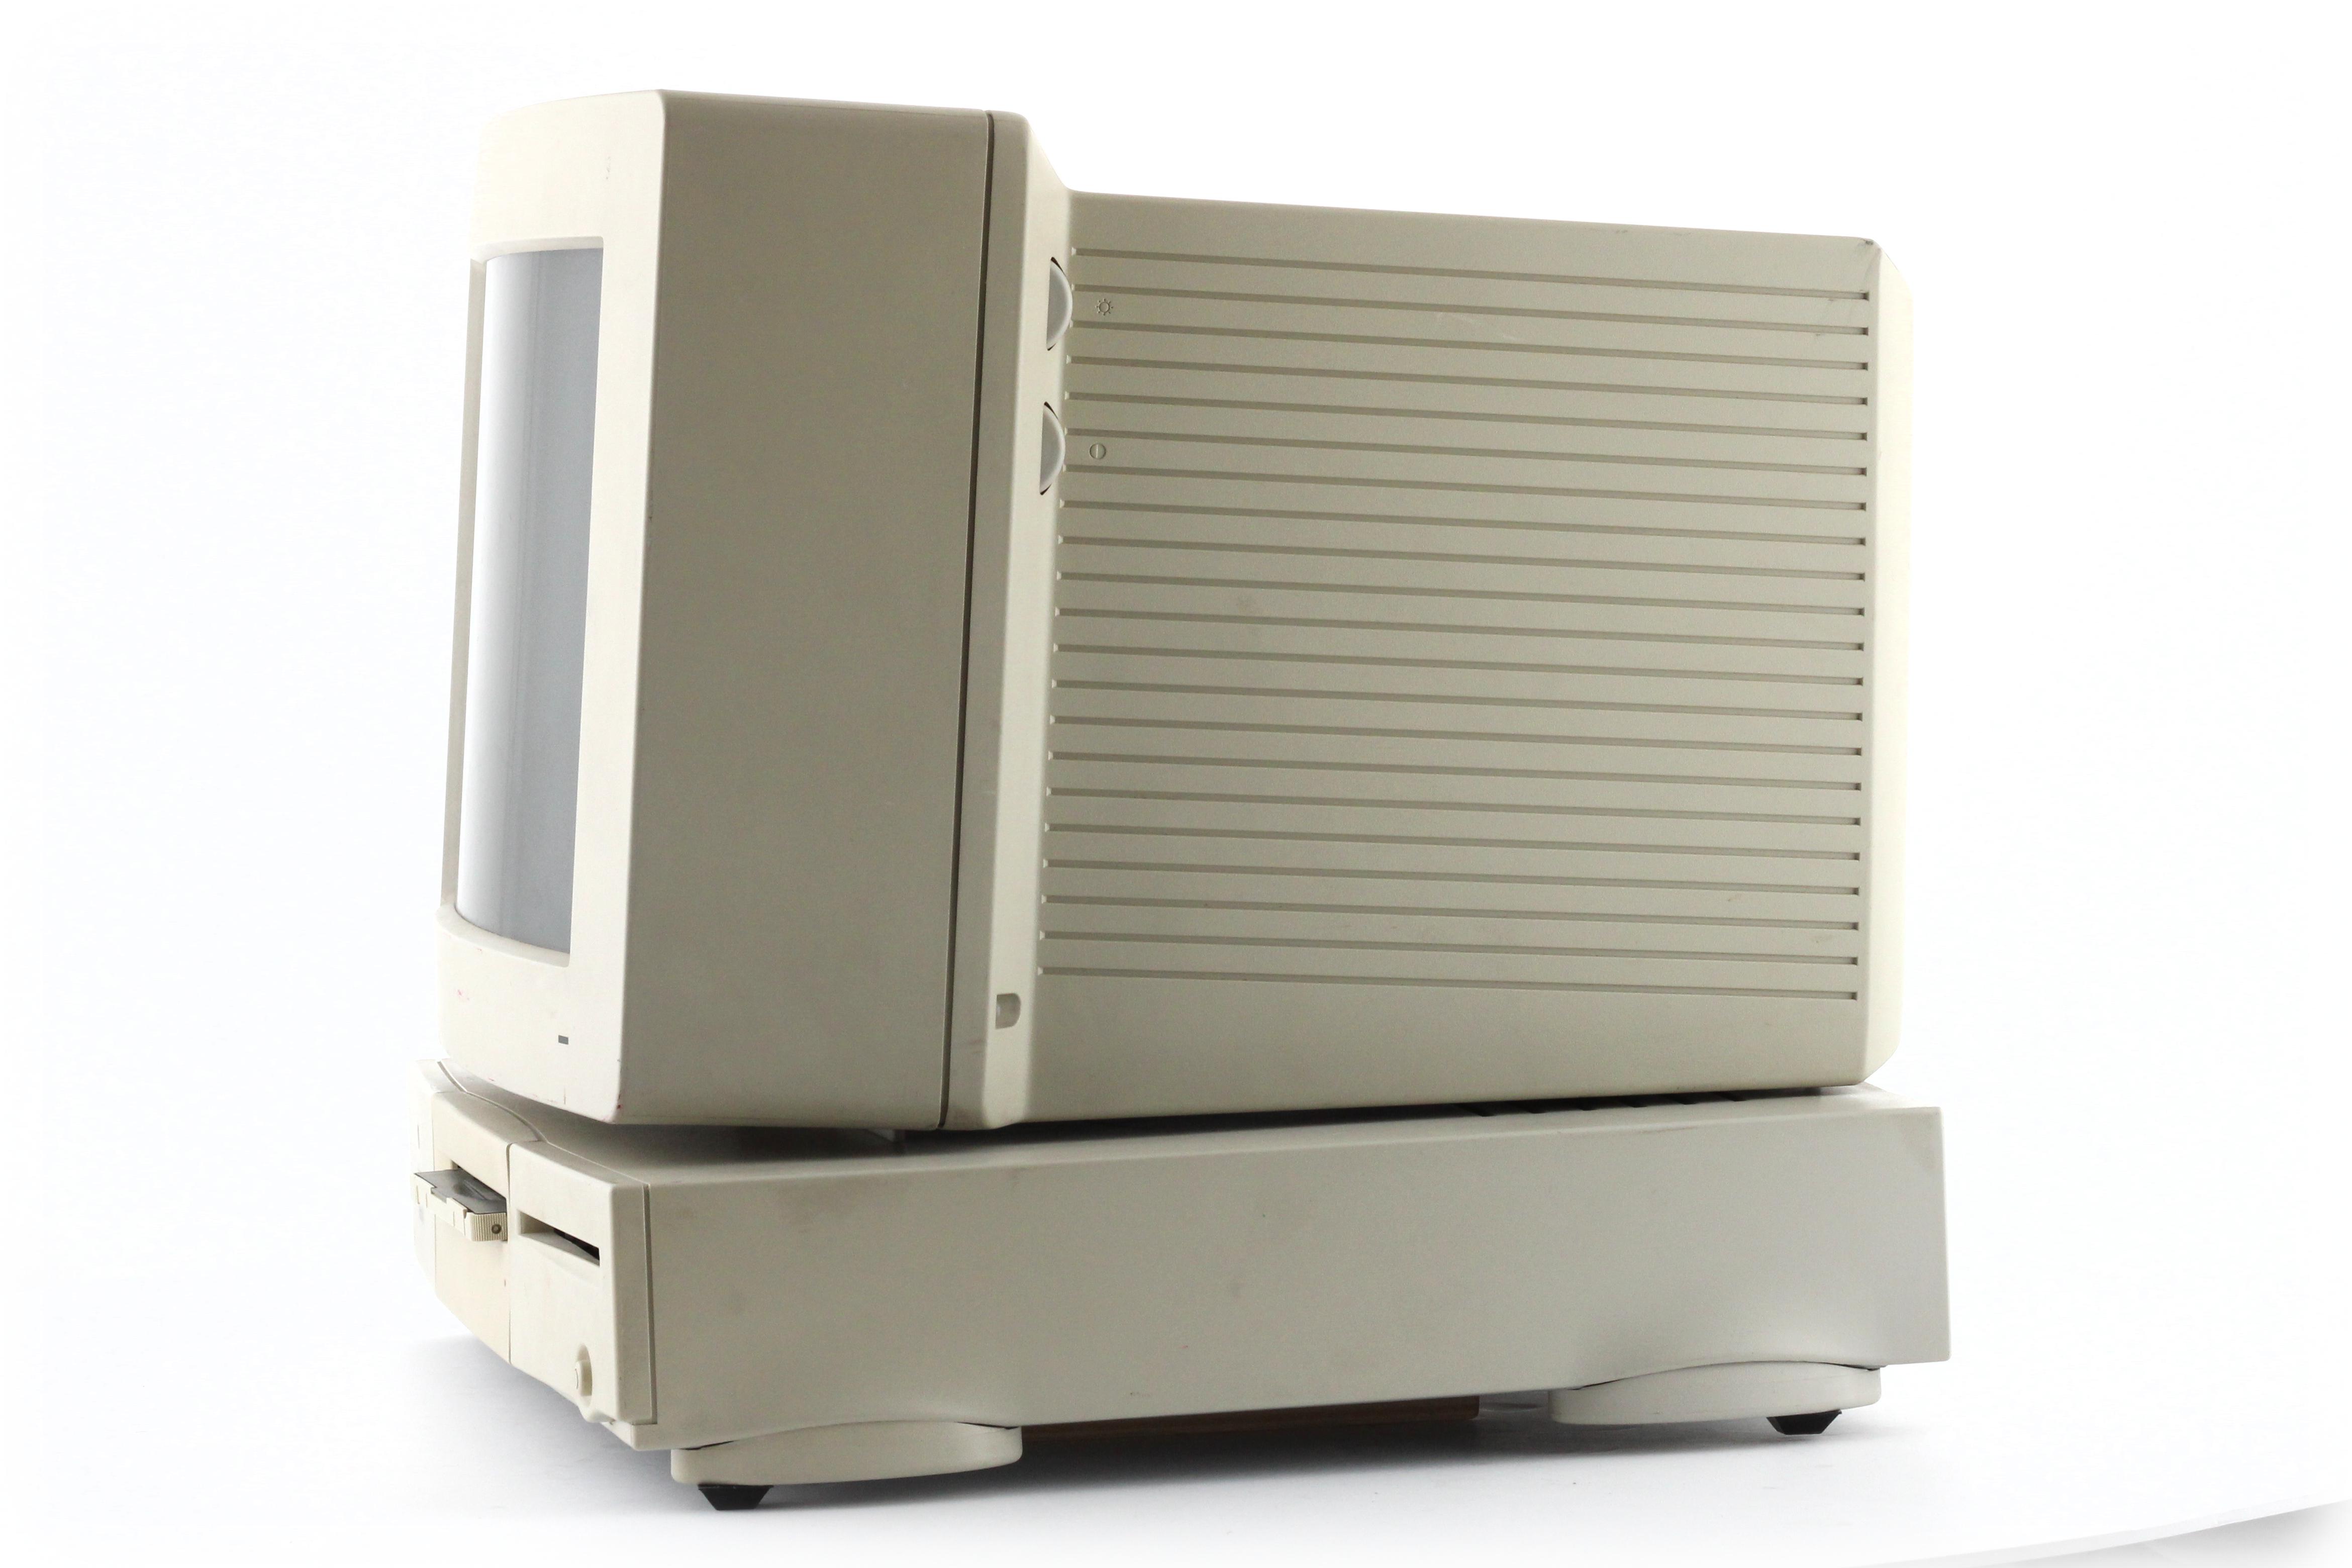 MAL | Macintosh Centris 610